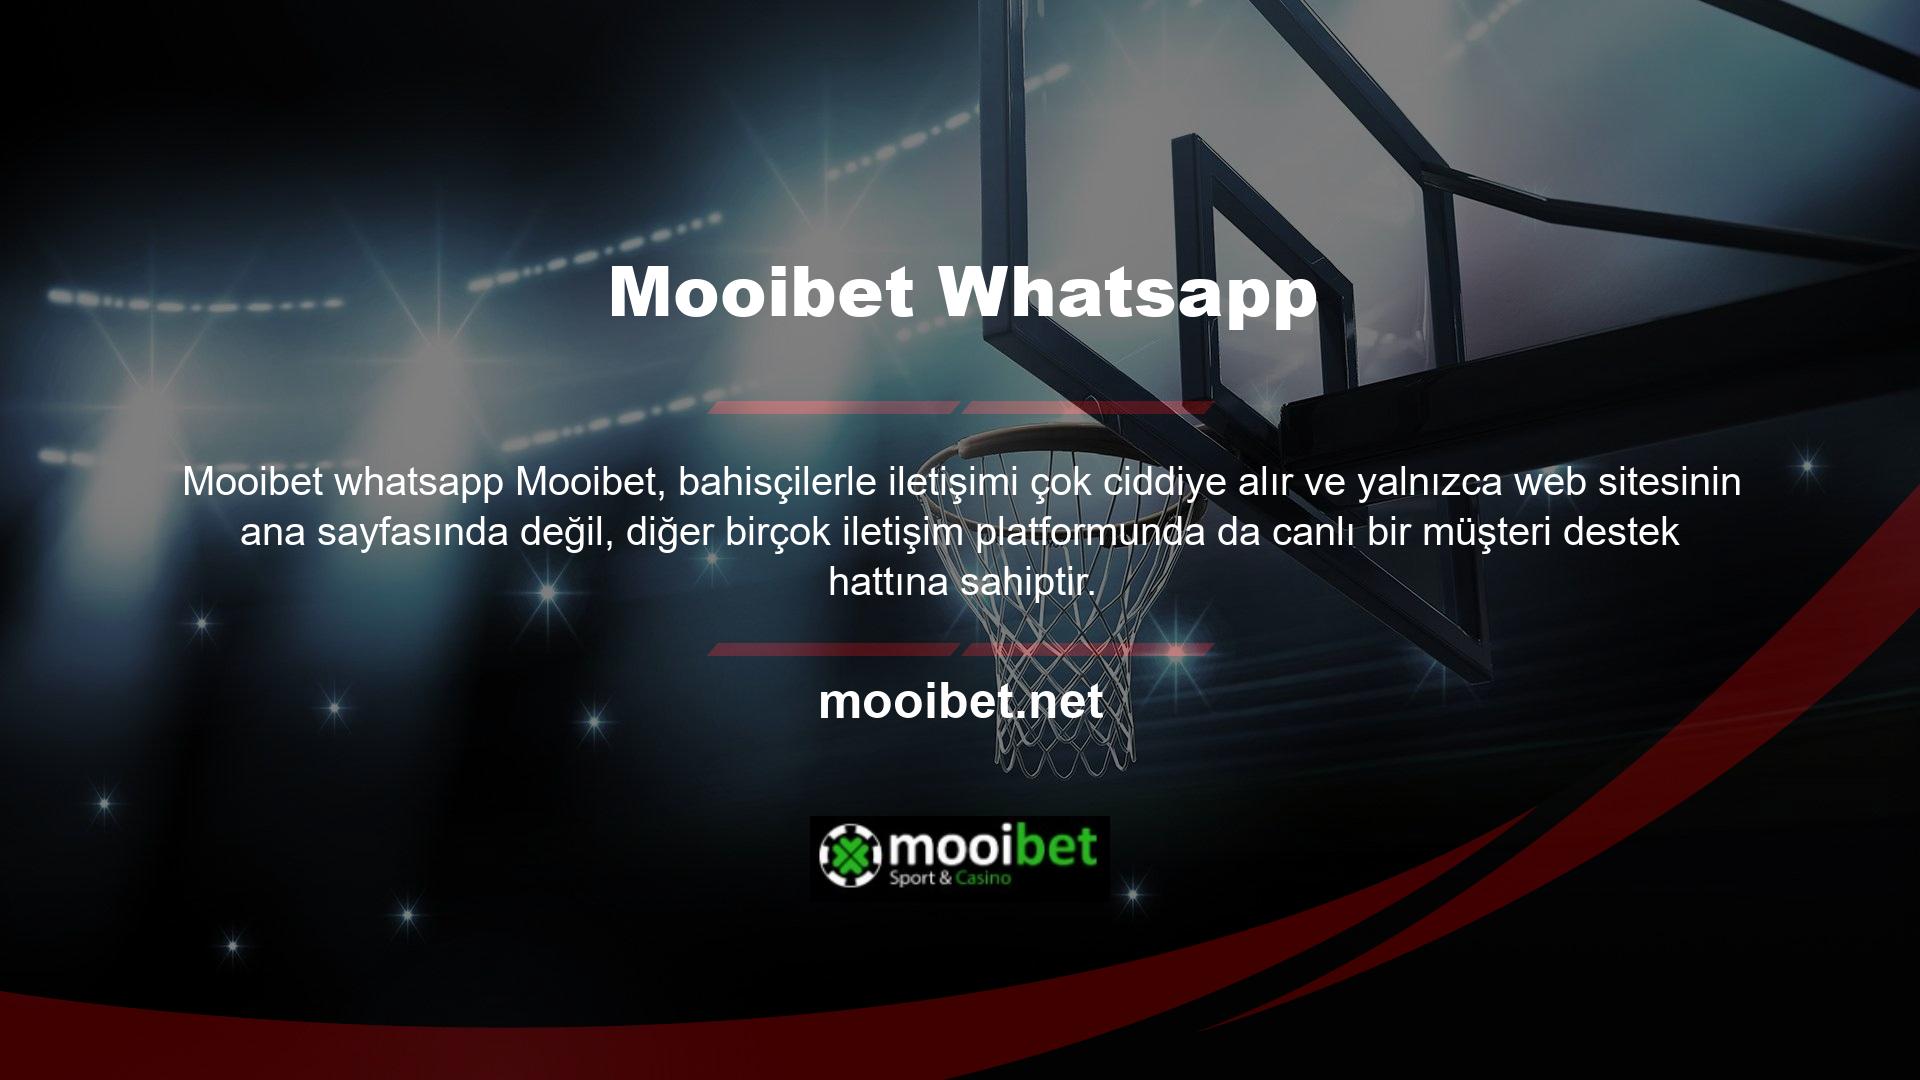 Mooibet Whatsapp